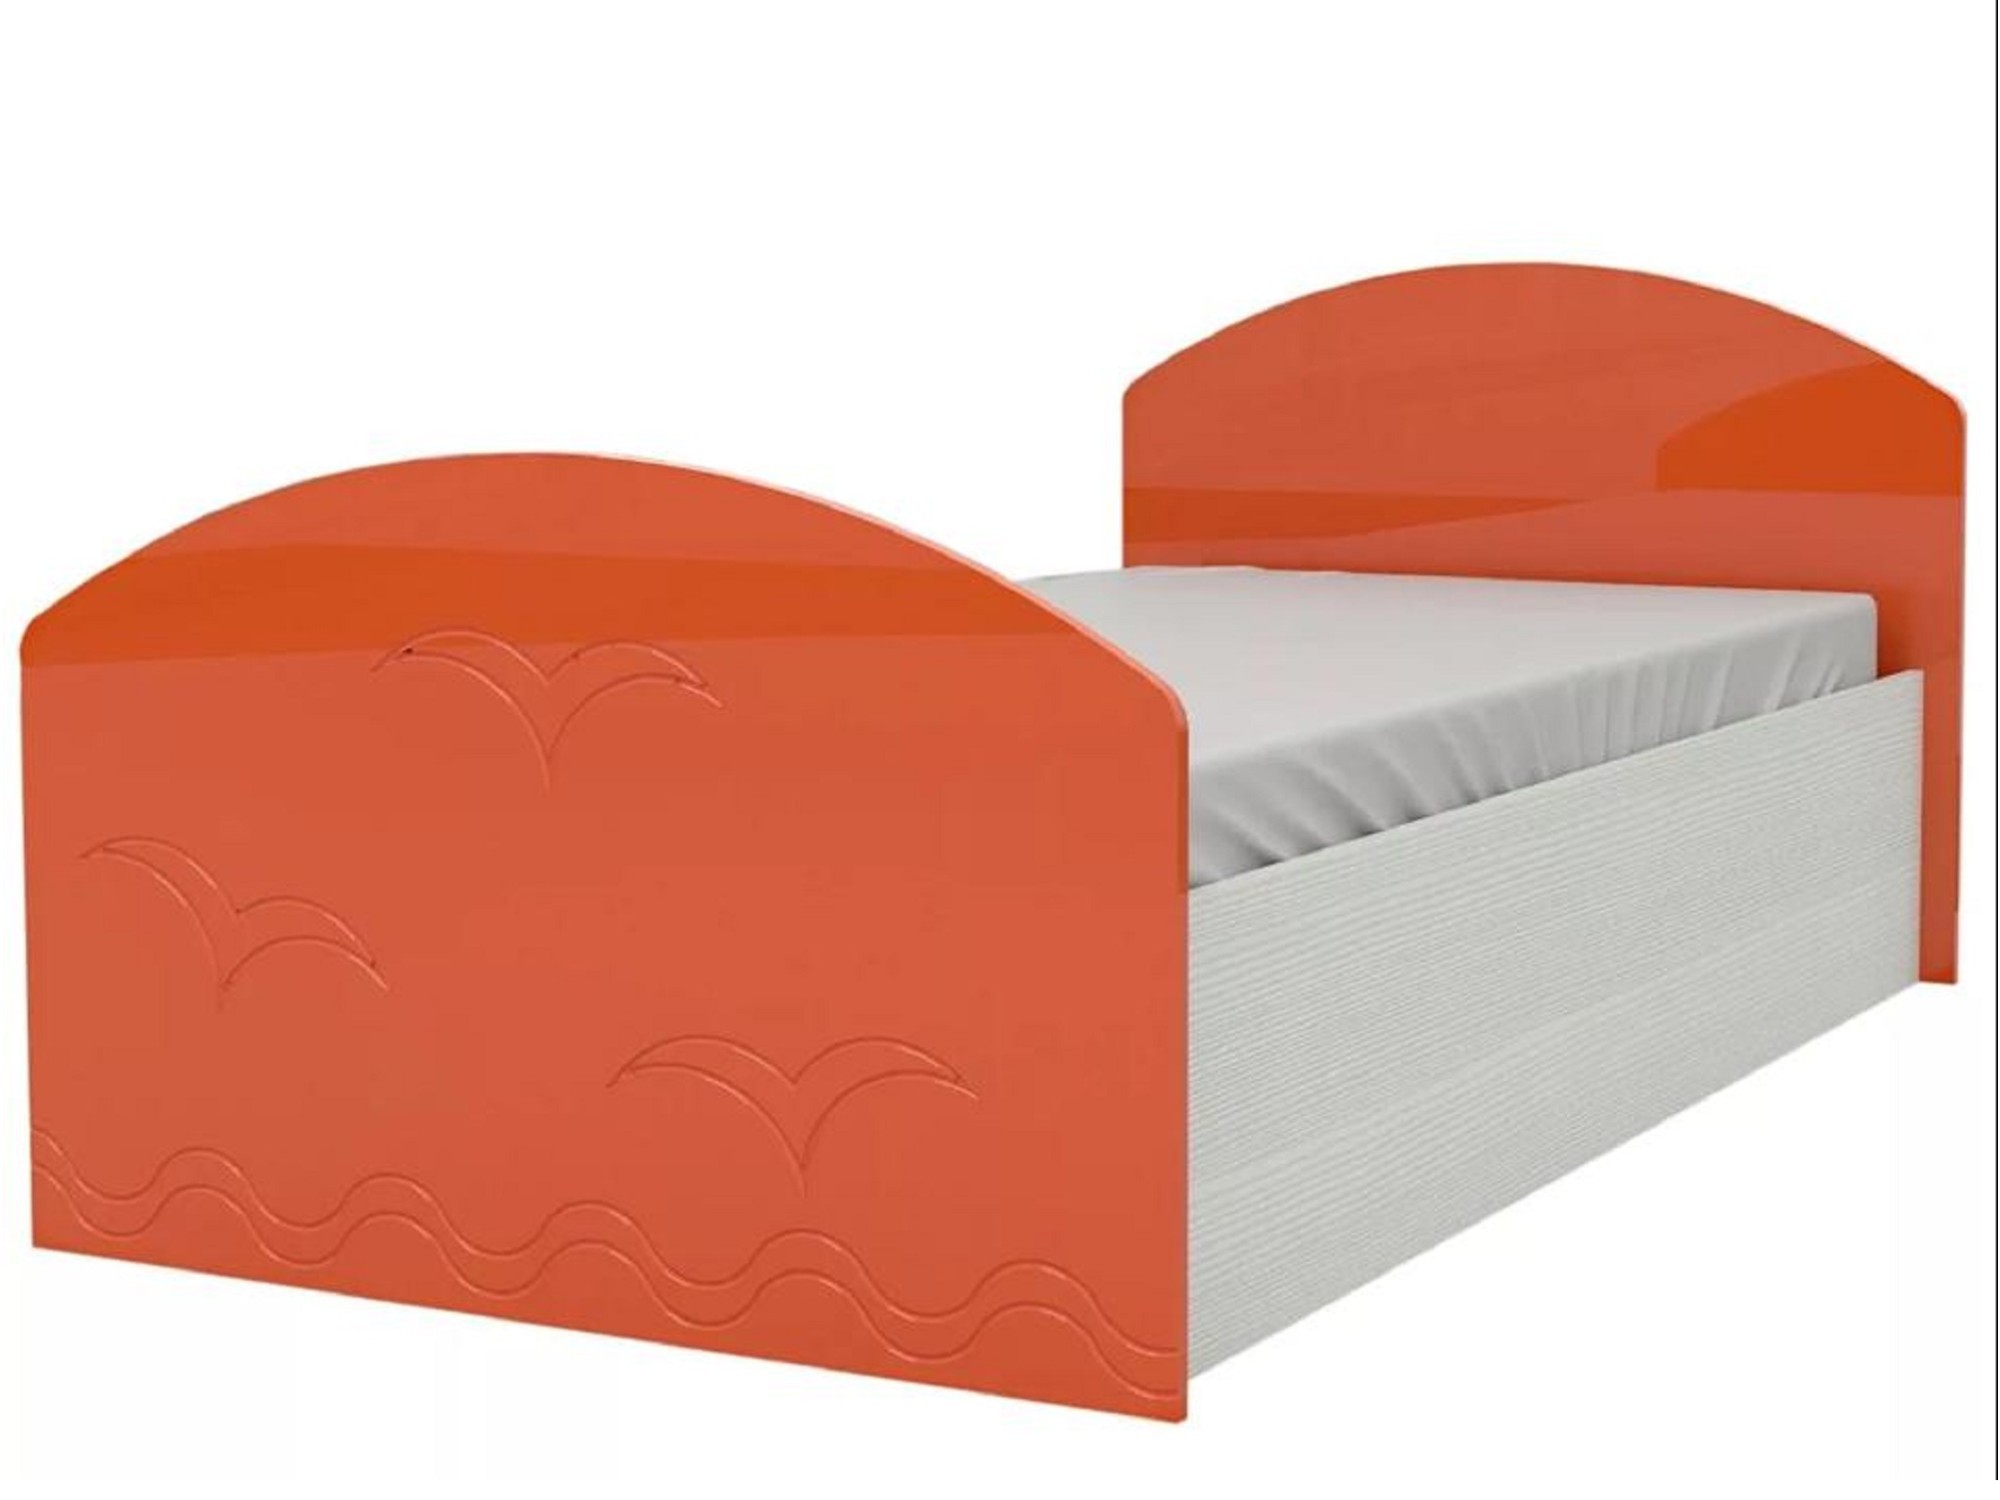 Юниор-2 Детская кровать 80, металлик (Оранжевый металлик, Дуб белёный) Дуб белёный, МДФ, ЛДСП юниор 2 детская кровать 80 металлик фиолетовый металлик дуб белёный дуб белёный мдф лдсп